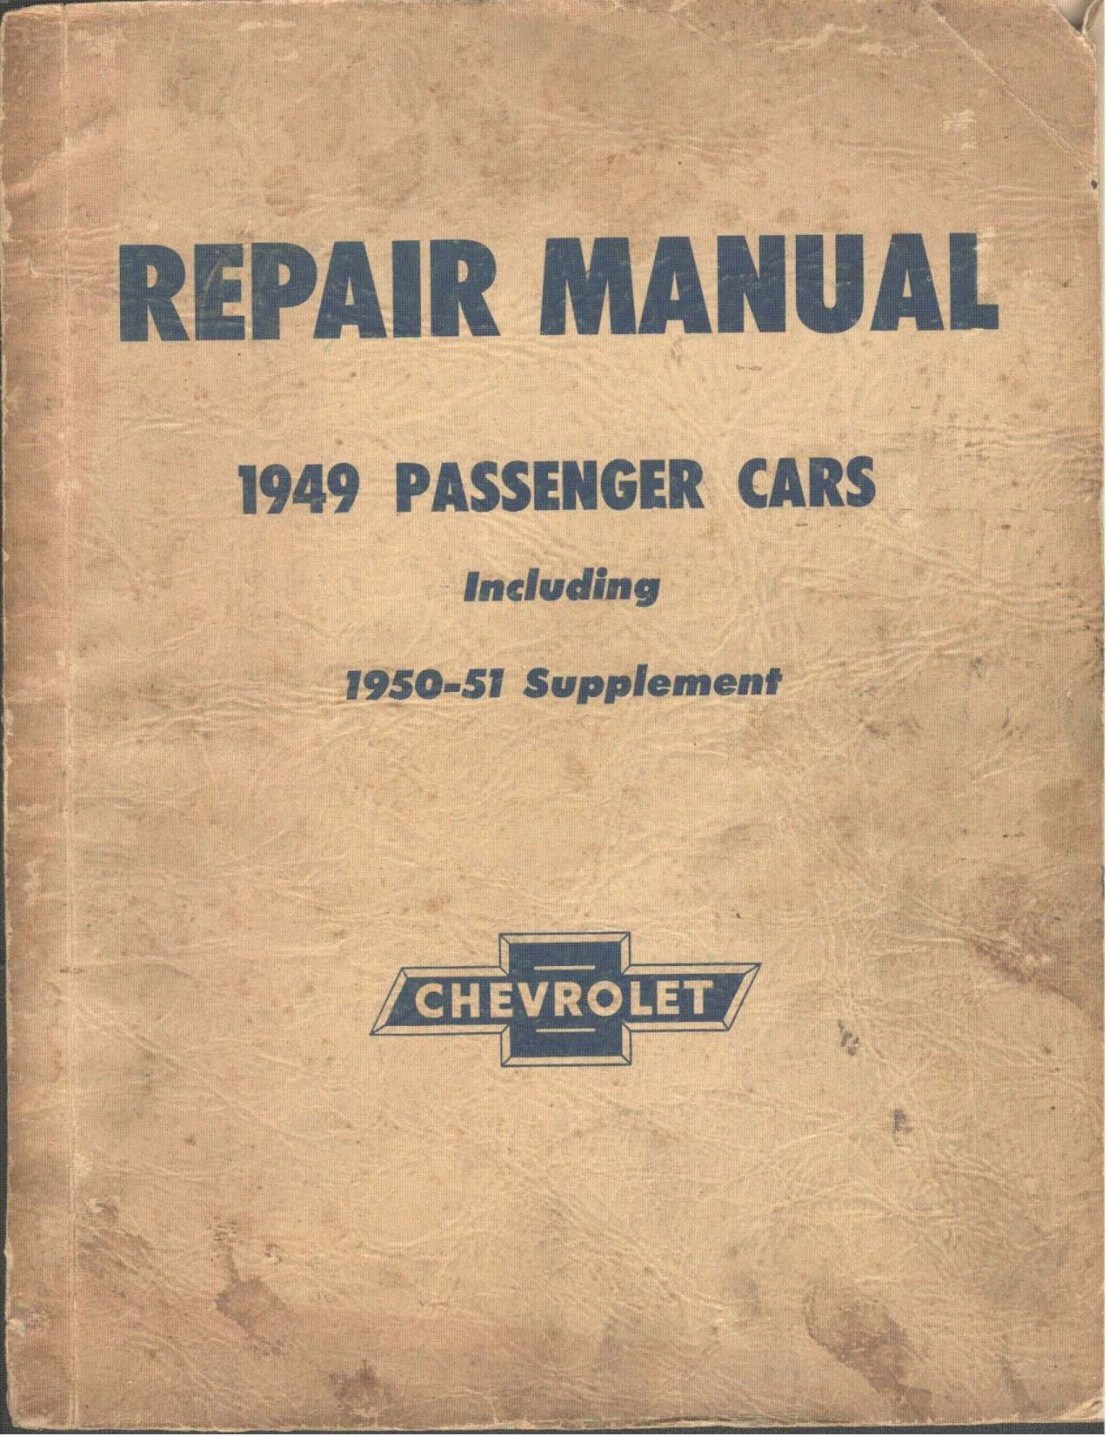 classic chevy repair manual